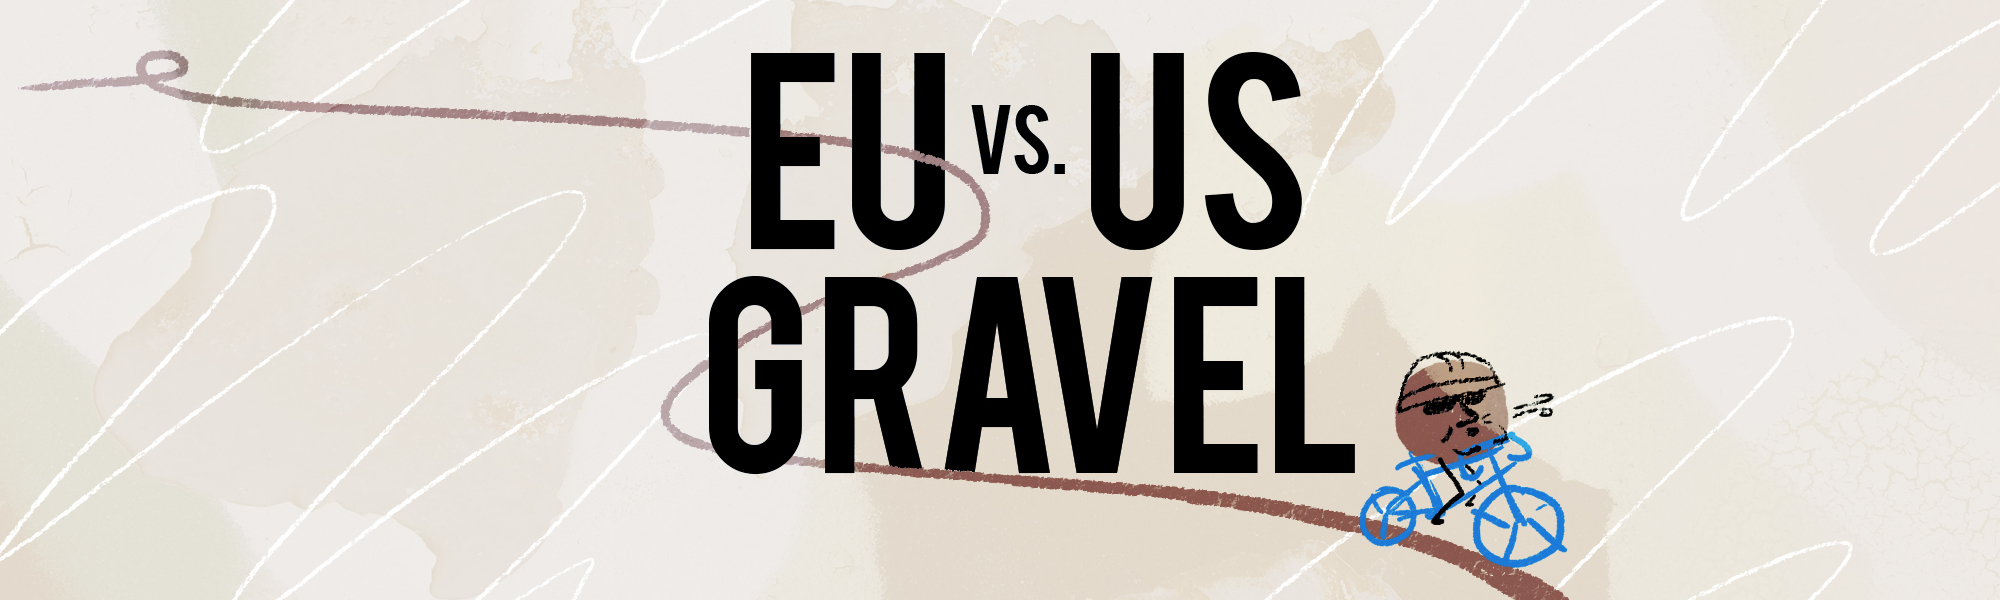 EU vs US Gravel